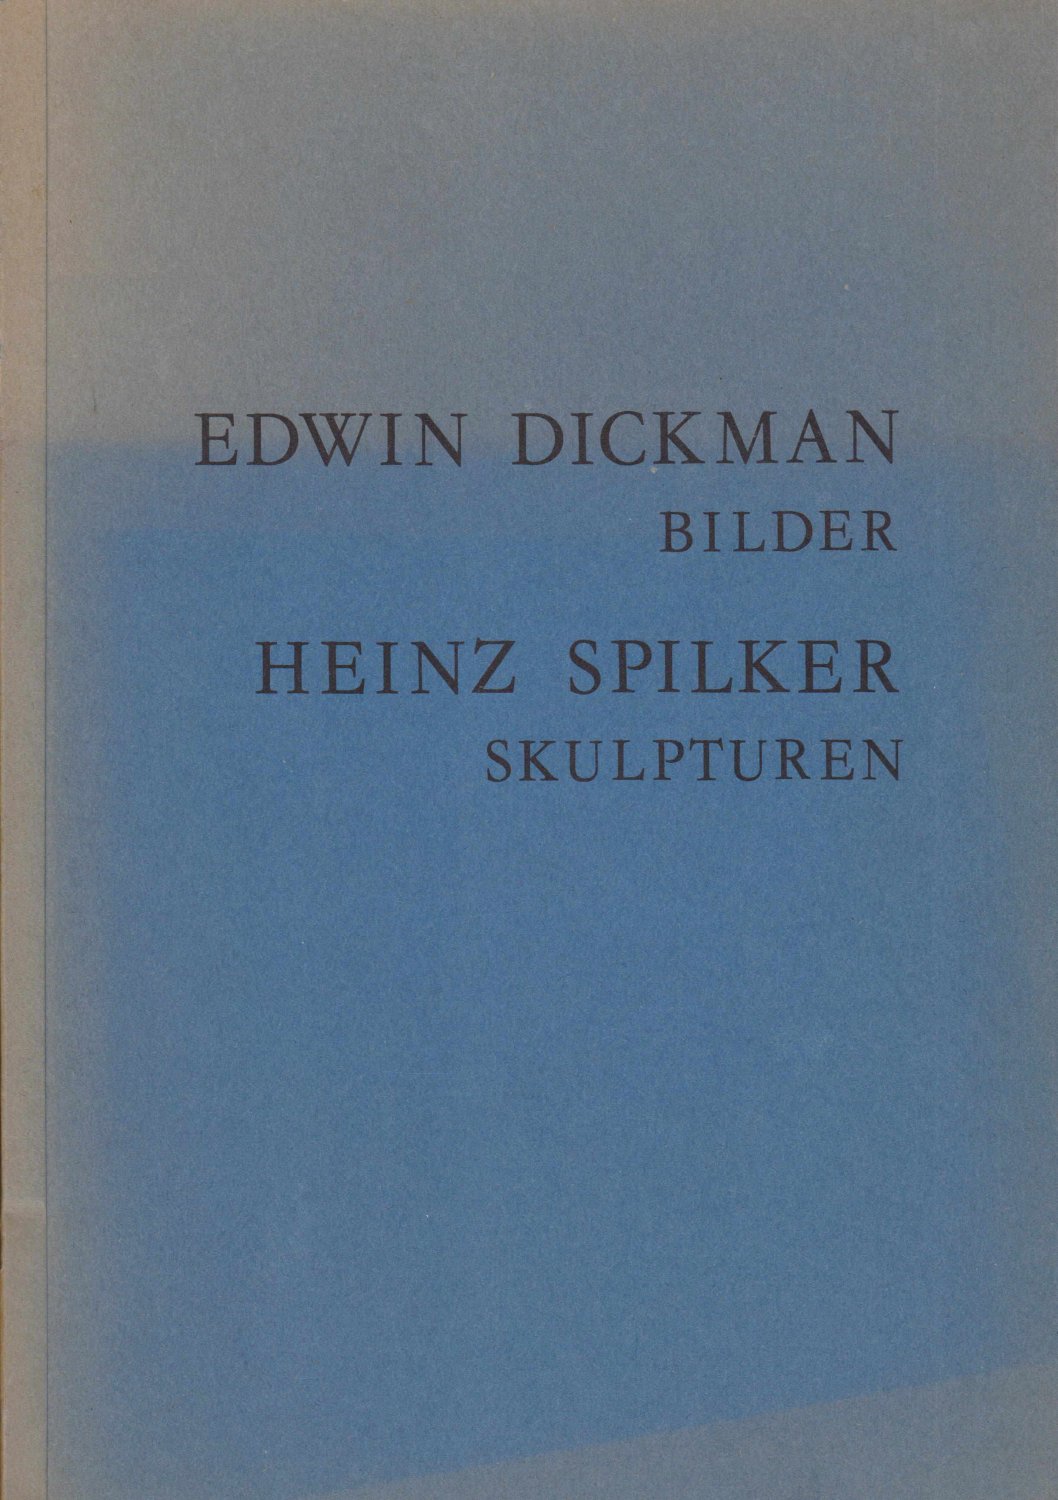 DICKMAN, Edwin / Heinz SPILKER:  Edwin Dickman - Bilder. Heinz Spilker - Skulpturen. 